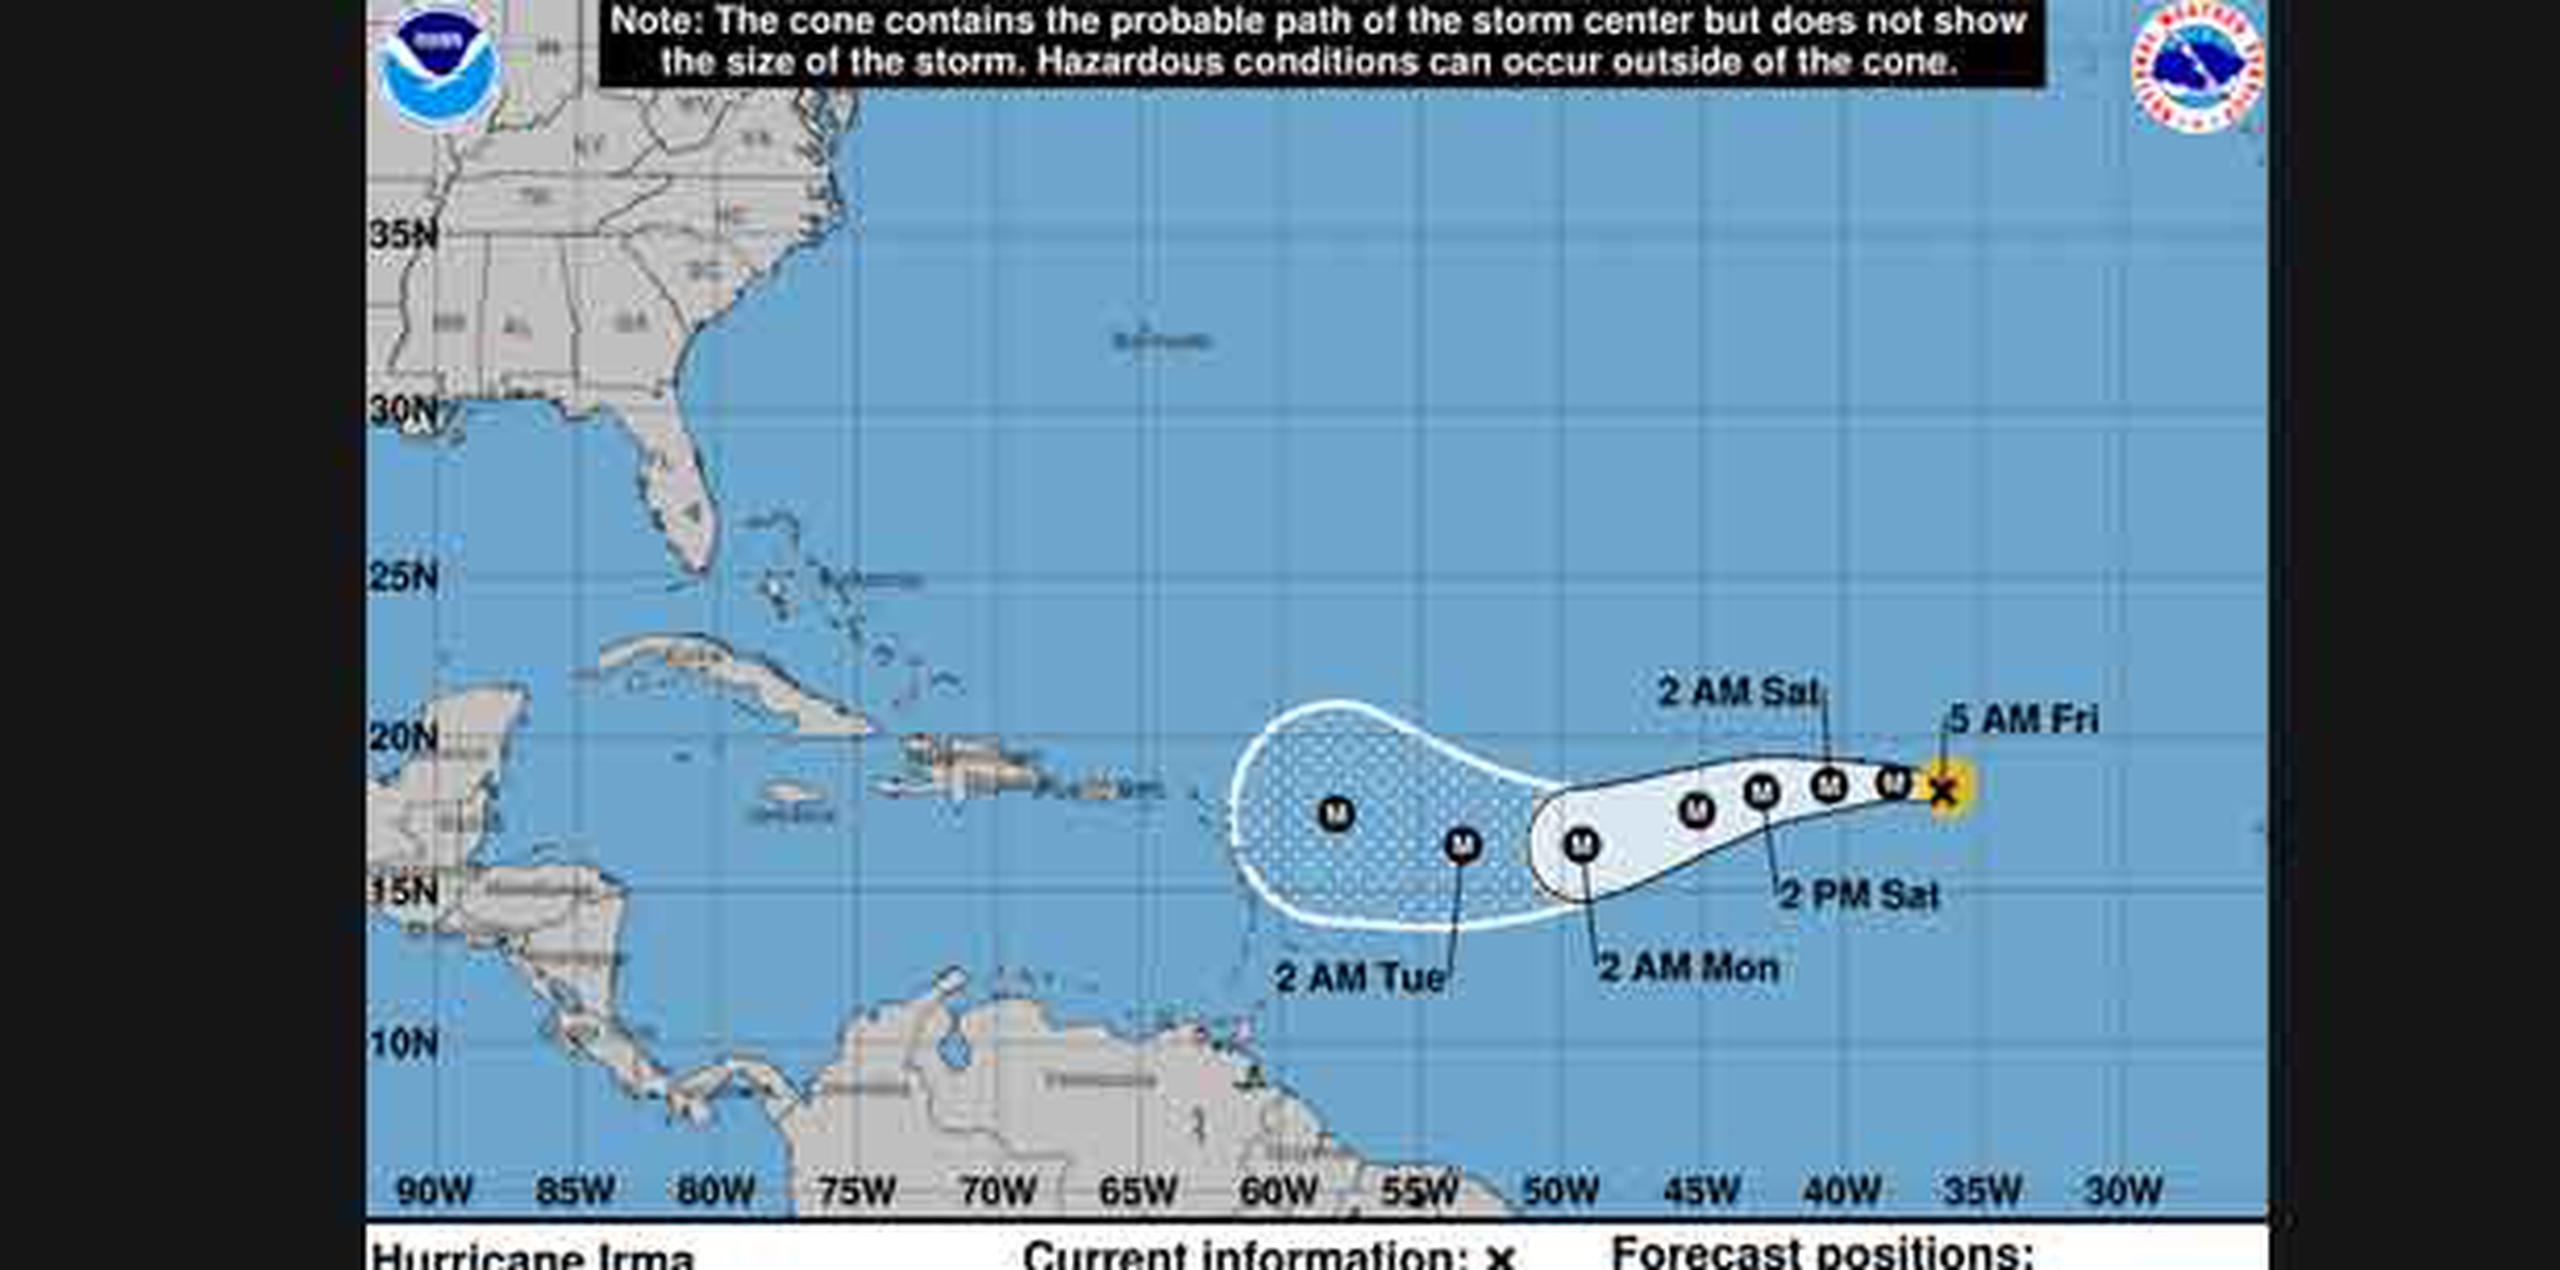 Los vientos con fuerza de huracán se extienden hasta 15 millas del centro y los vientos con fuerza de tormenta tropical se extienden hasta 90 millas del centro. (CNH)